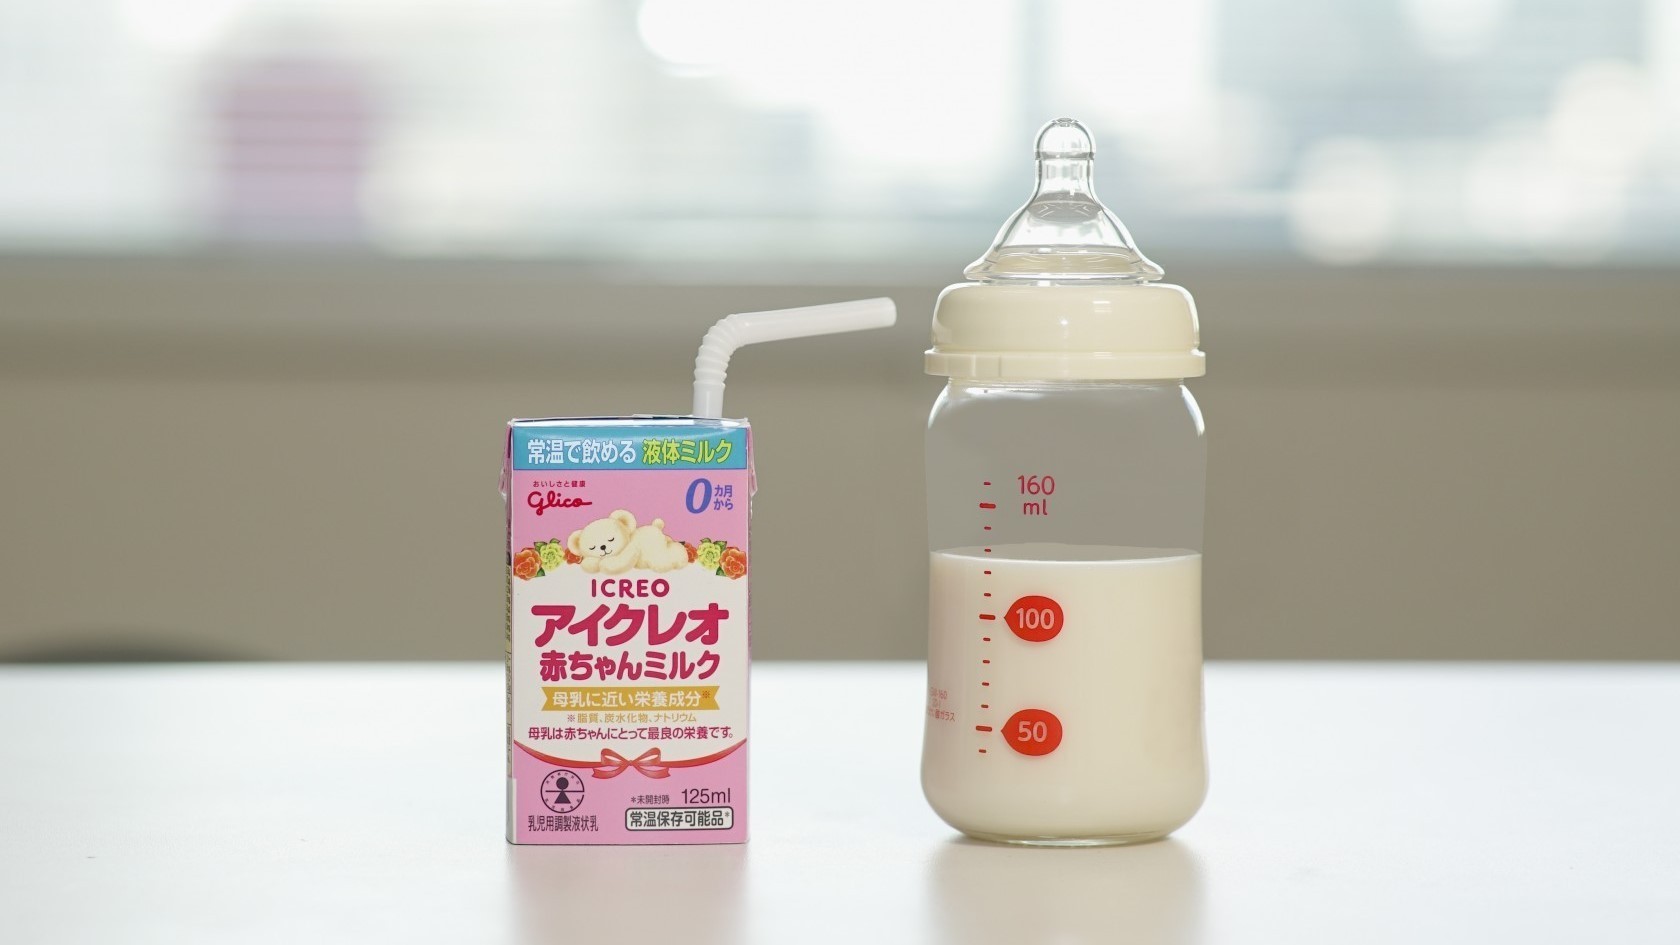 日本初の液体ミルク